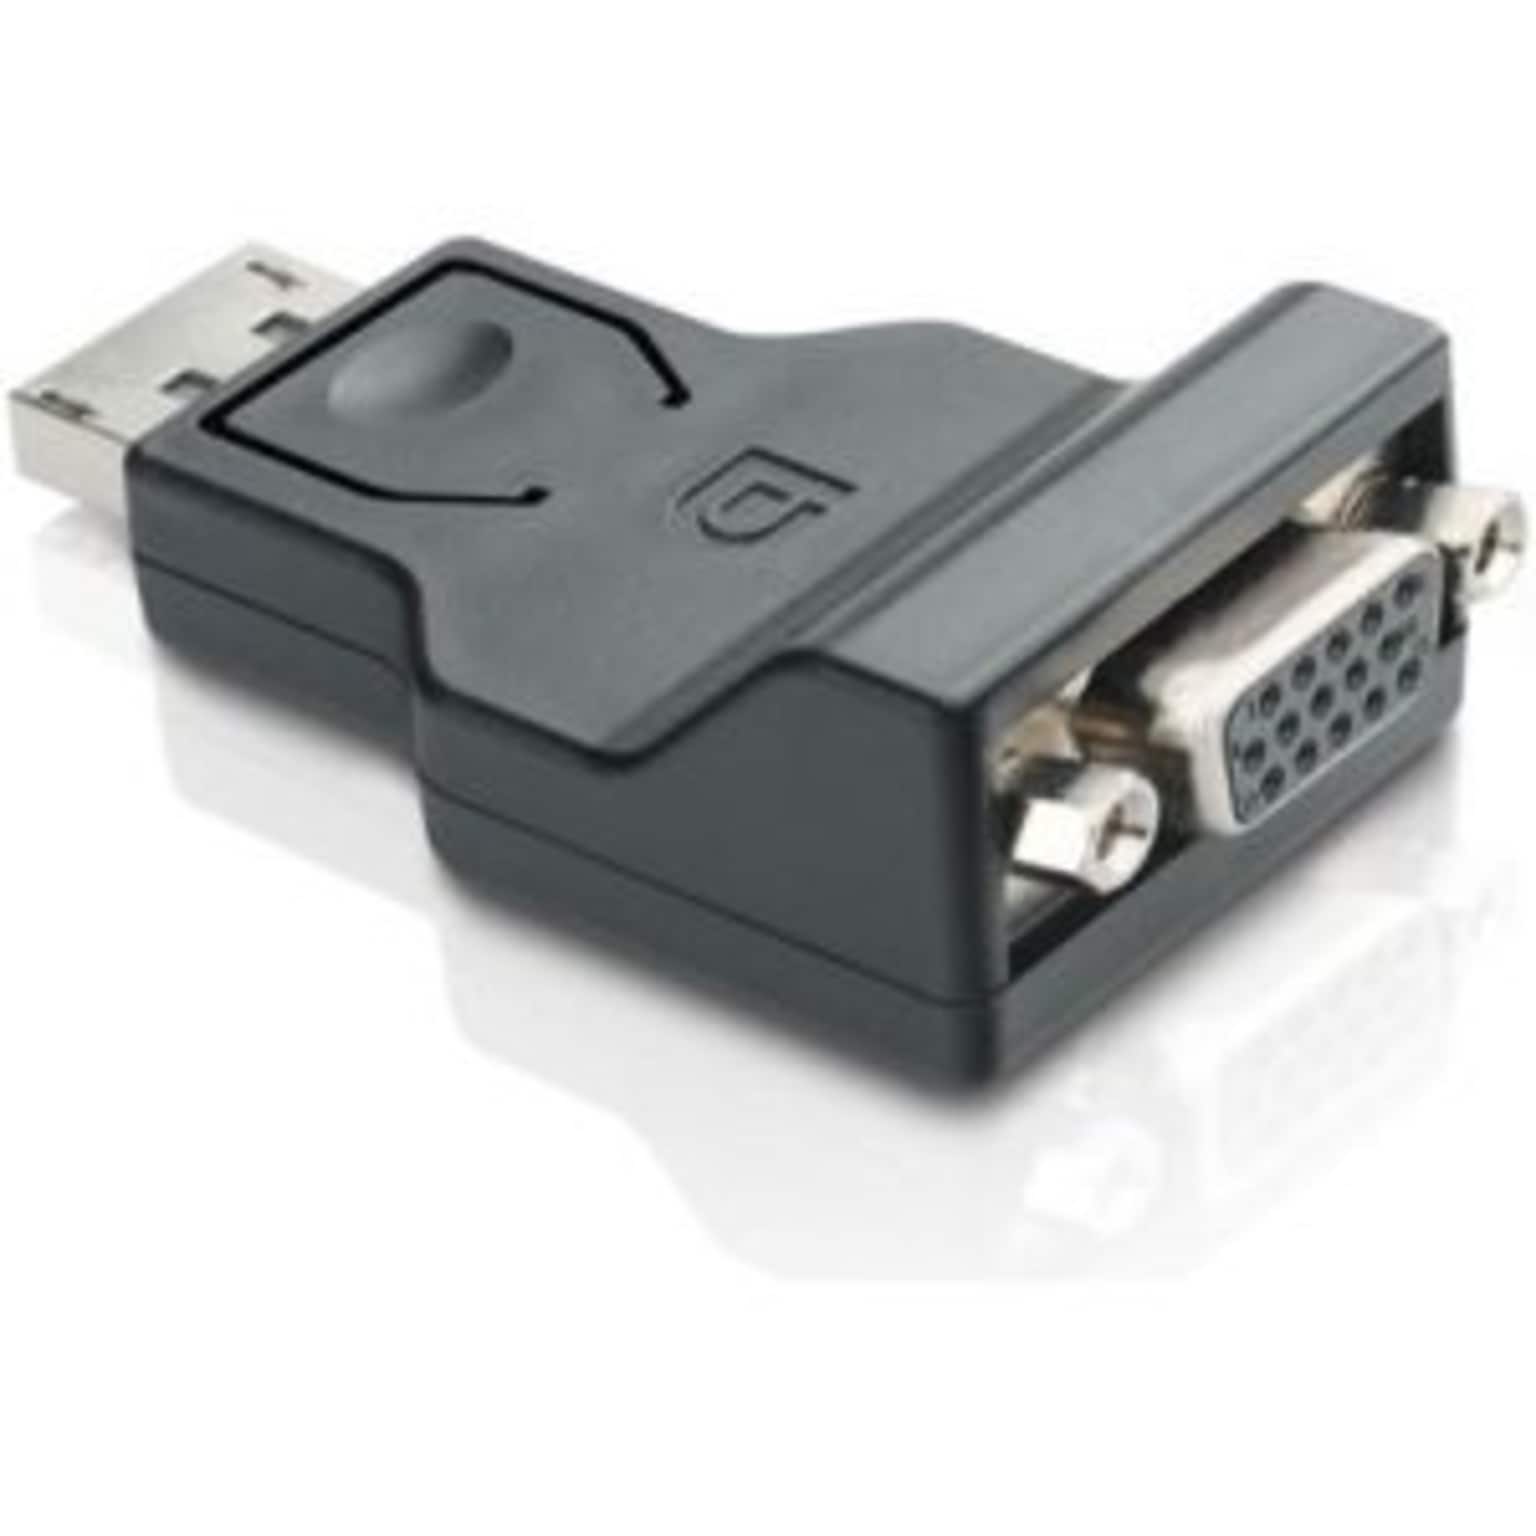 Comprehensive DPM-VGAF DisplayPort/VGA Audio/Video Cable